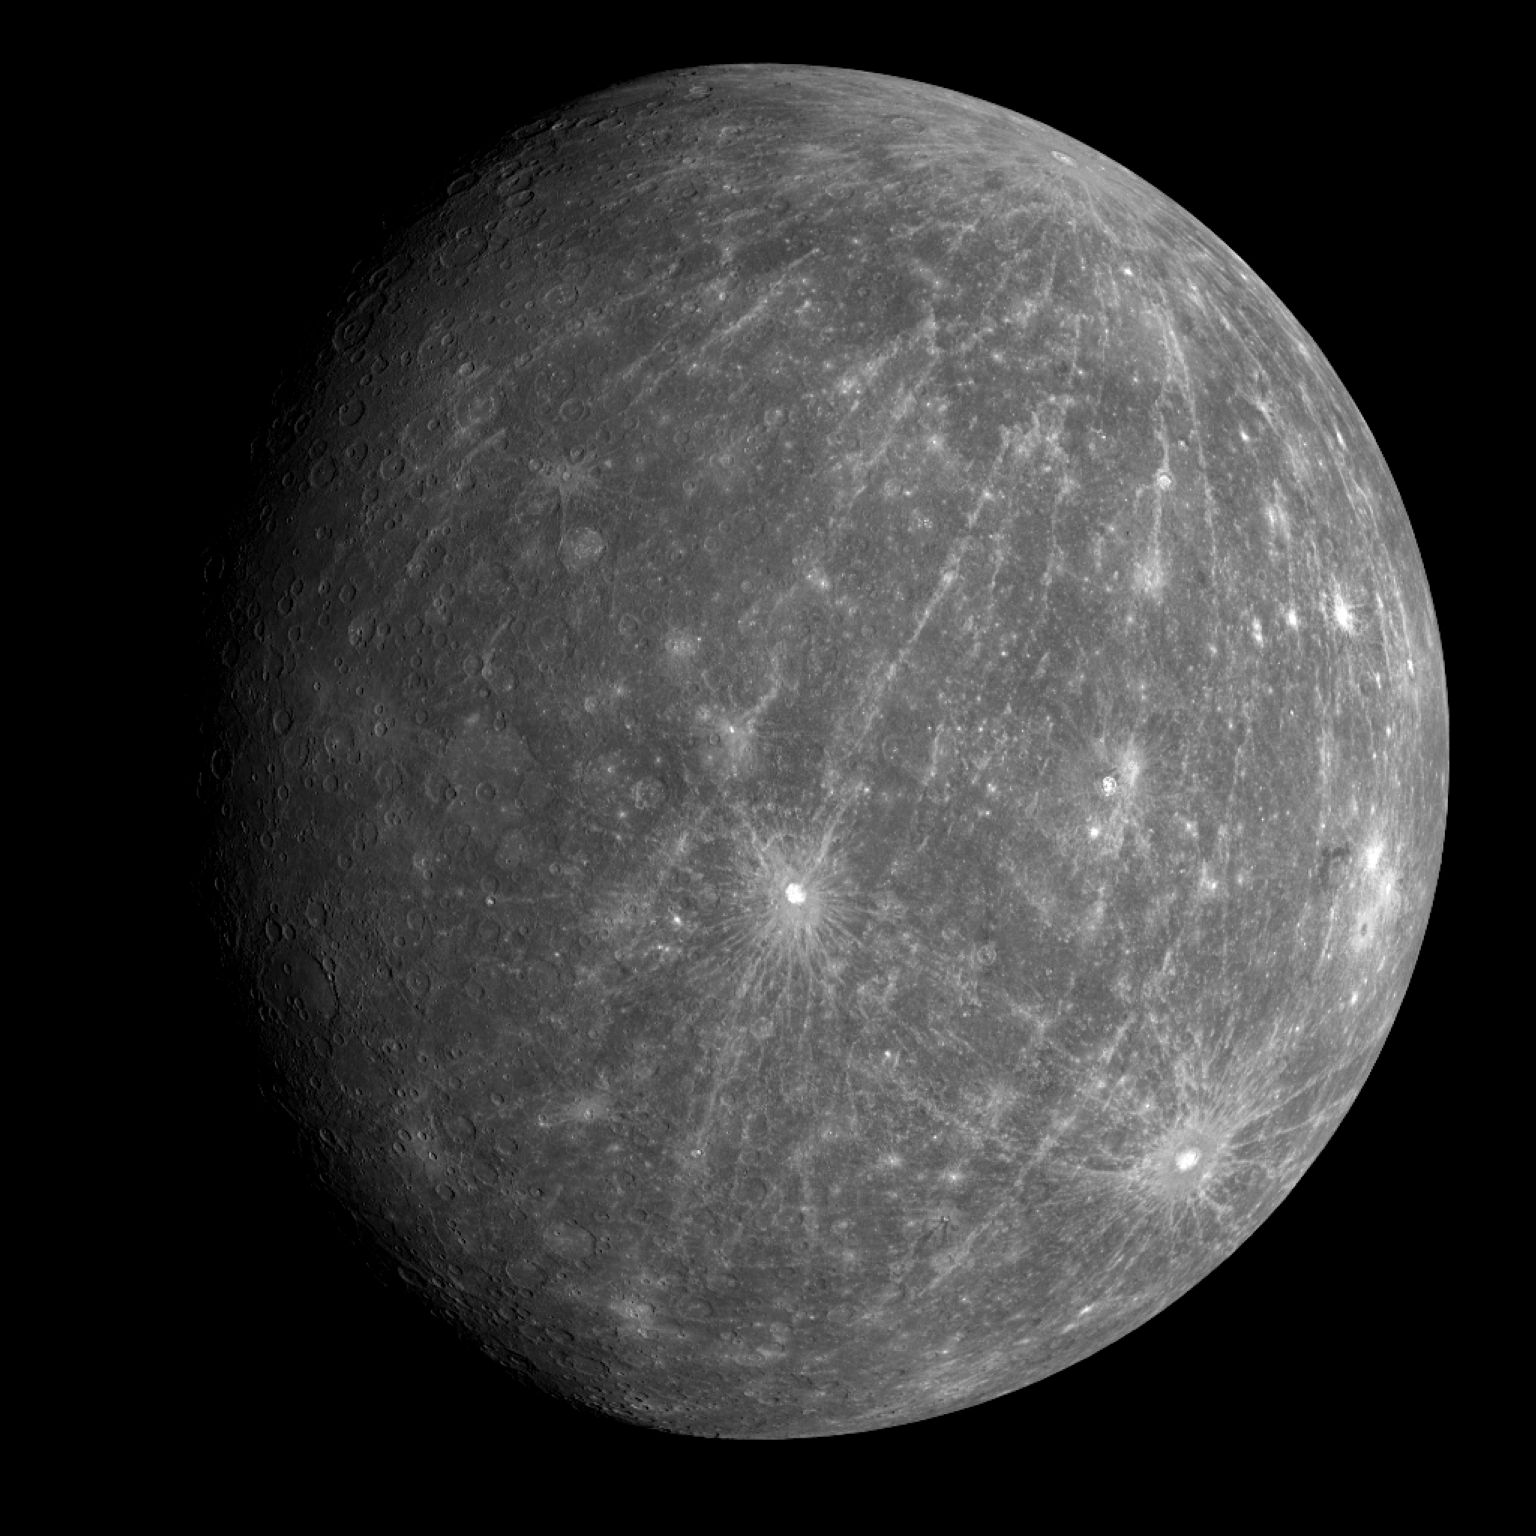 la surface de Mercure est criblée de cratères d’impact de météorites